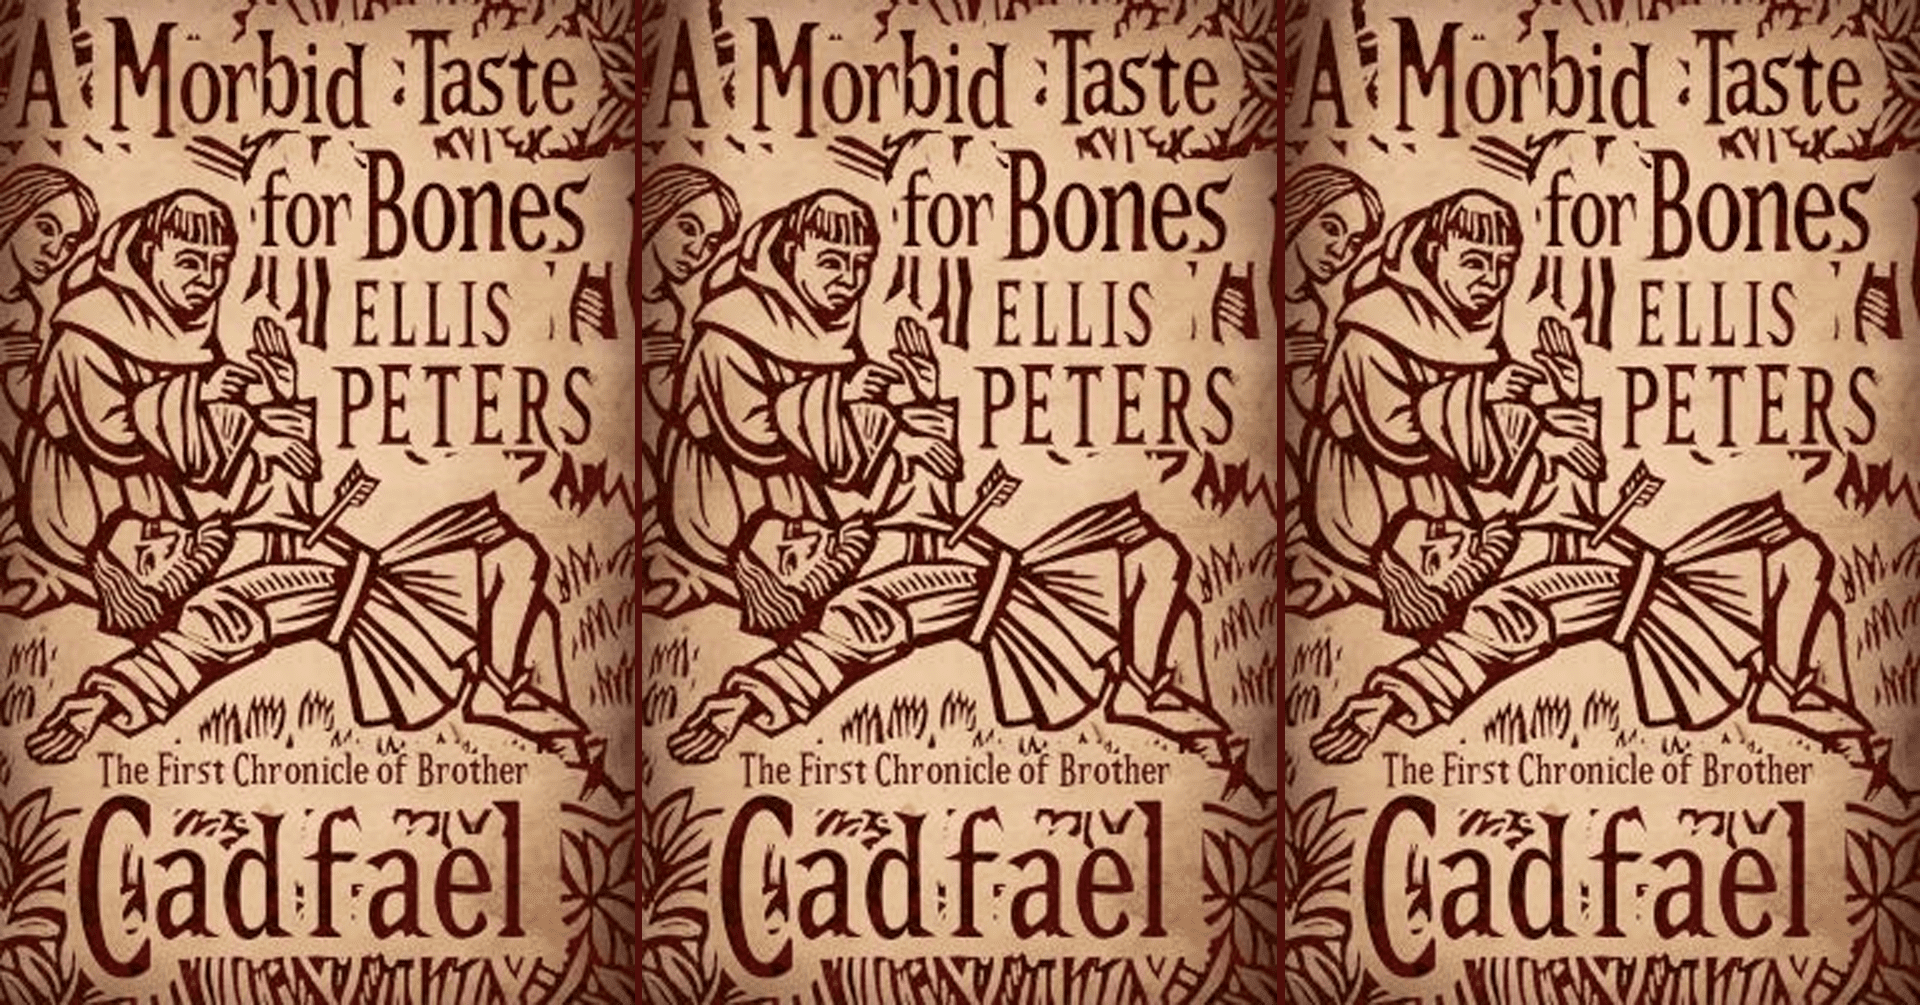 A Morbid Taste for Bones by Ellis Peters book cover